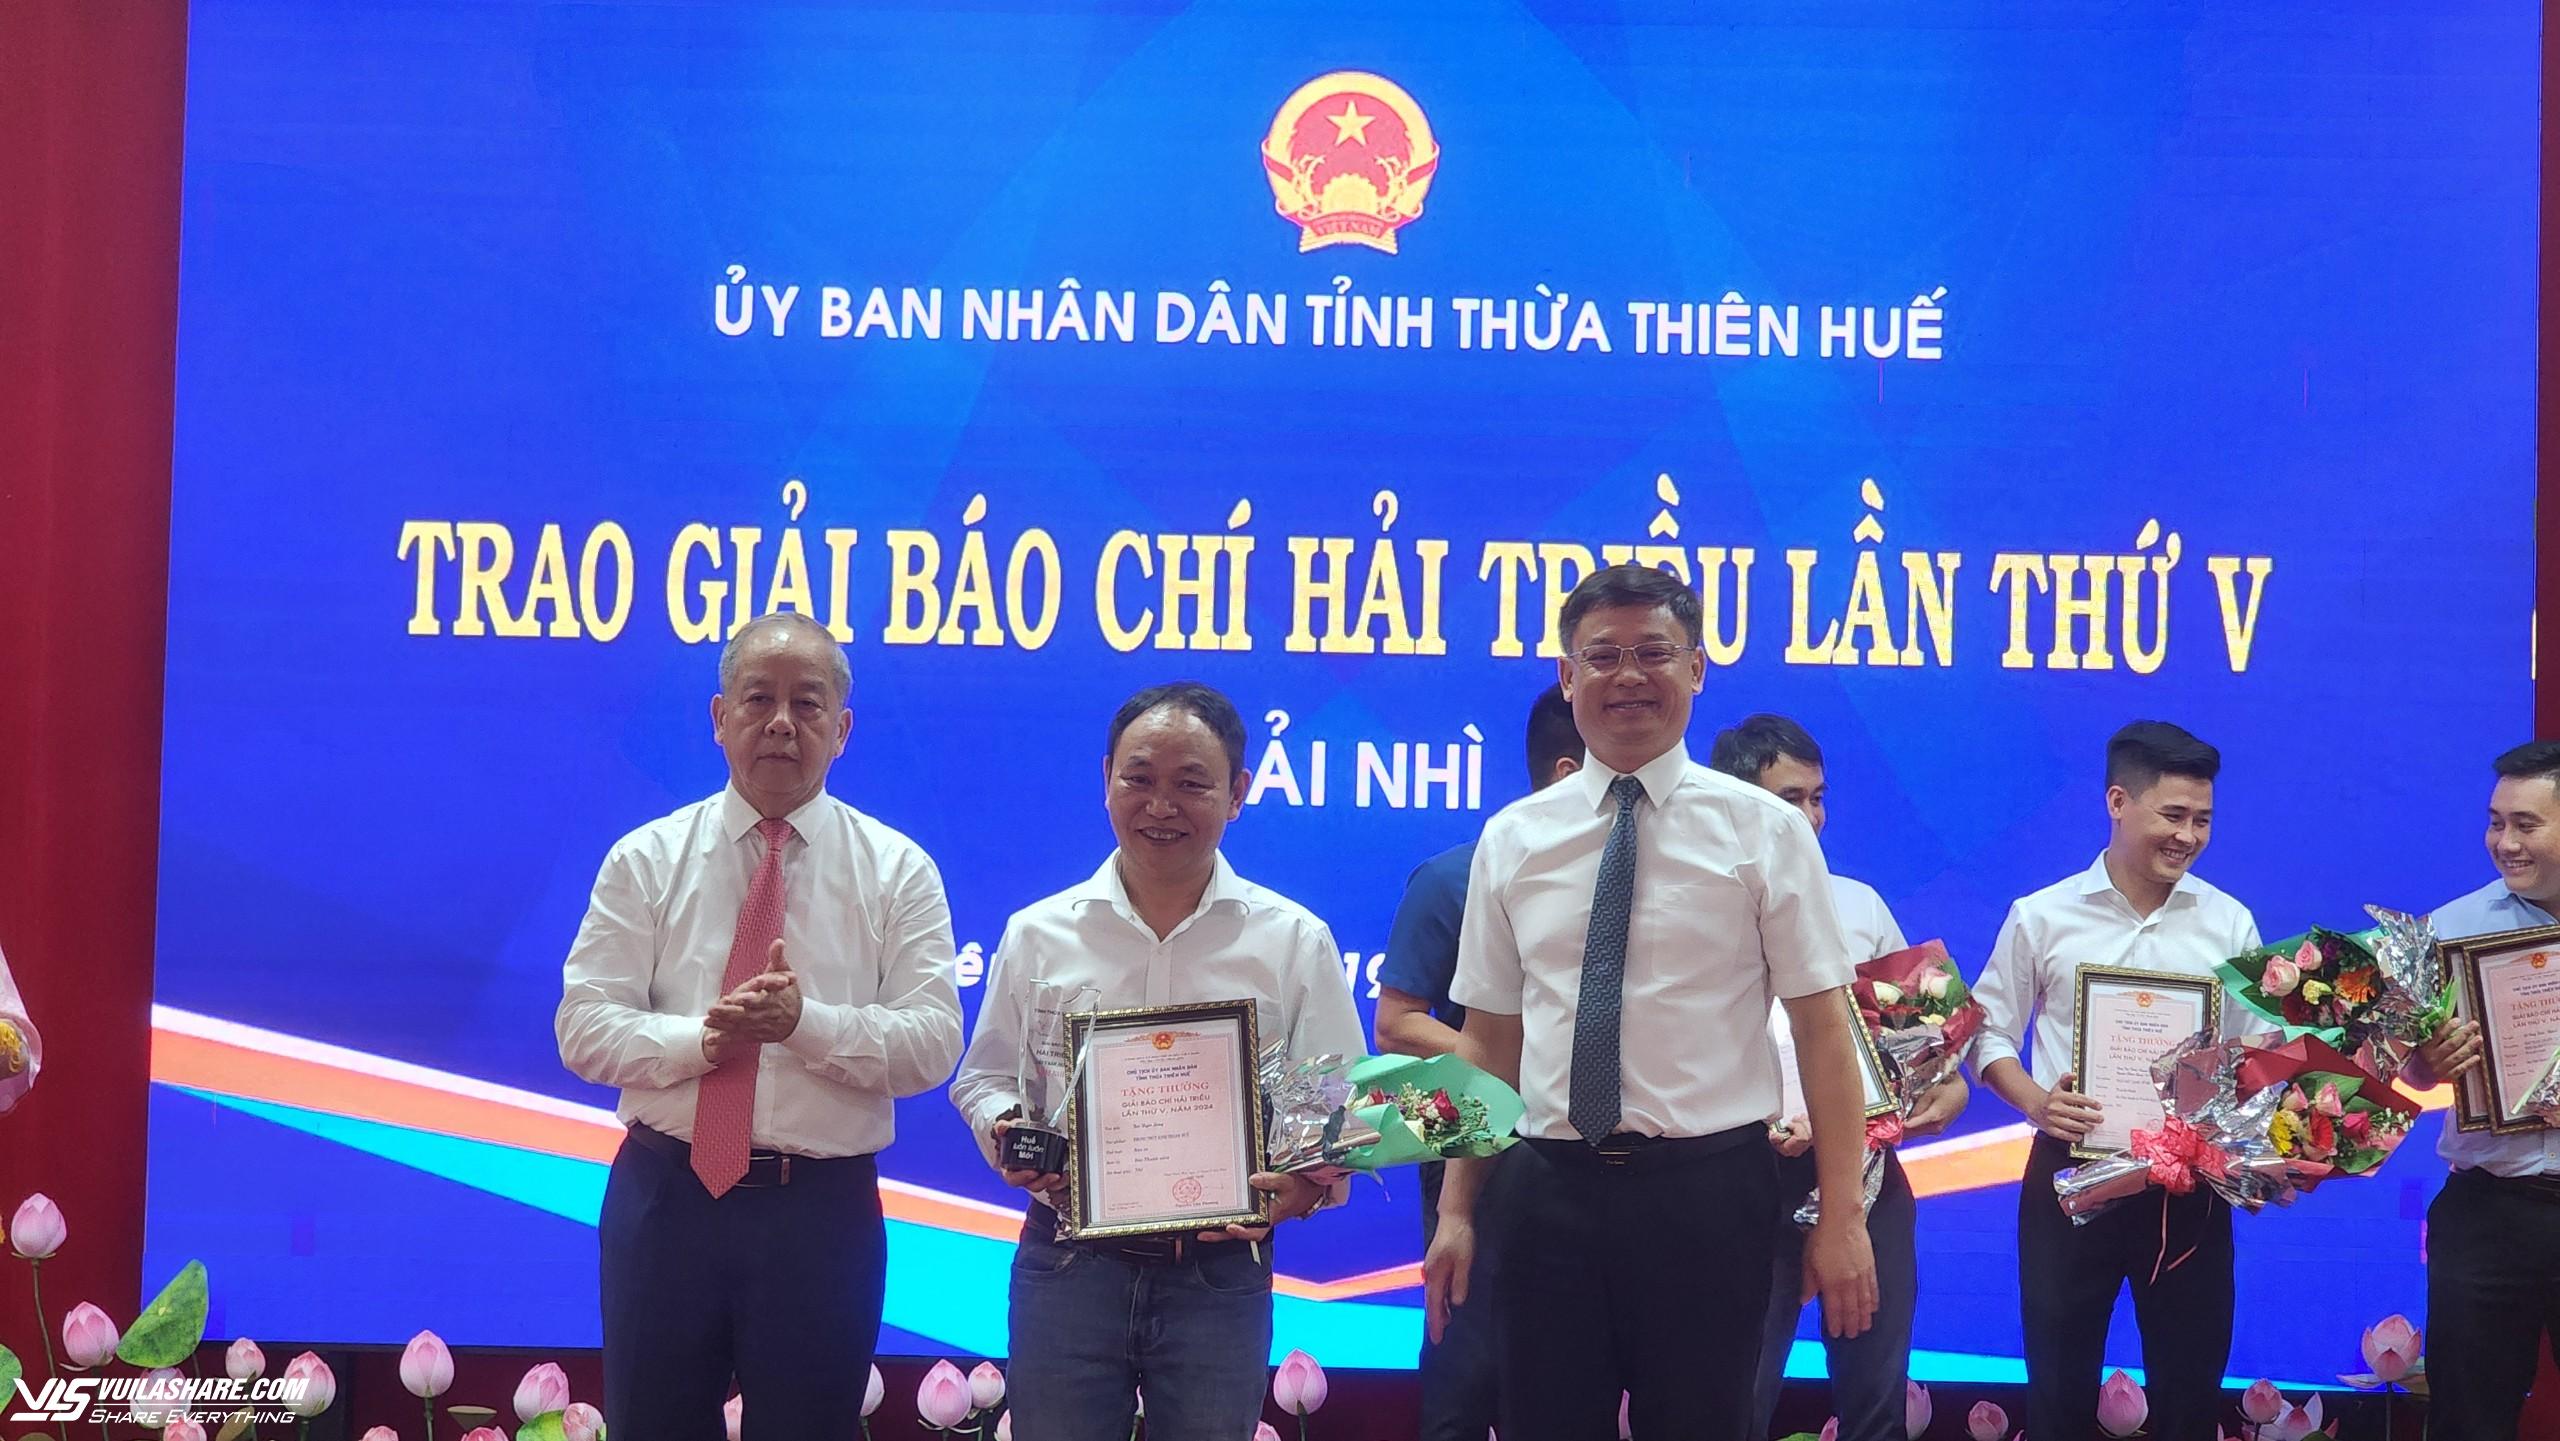 Hai nhà báo của Báo Thanh Niên nhận Giải báo chí Hải Triều lần thứ 5- Ảnh 1.